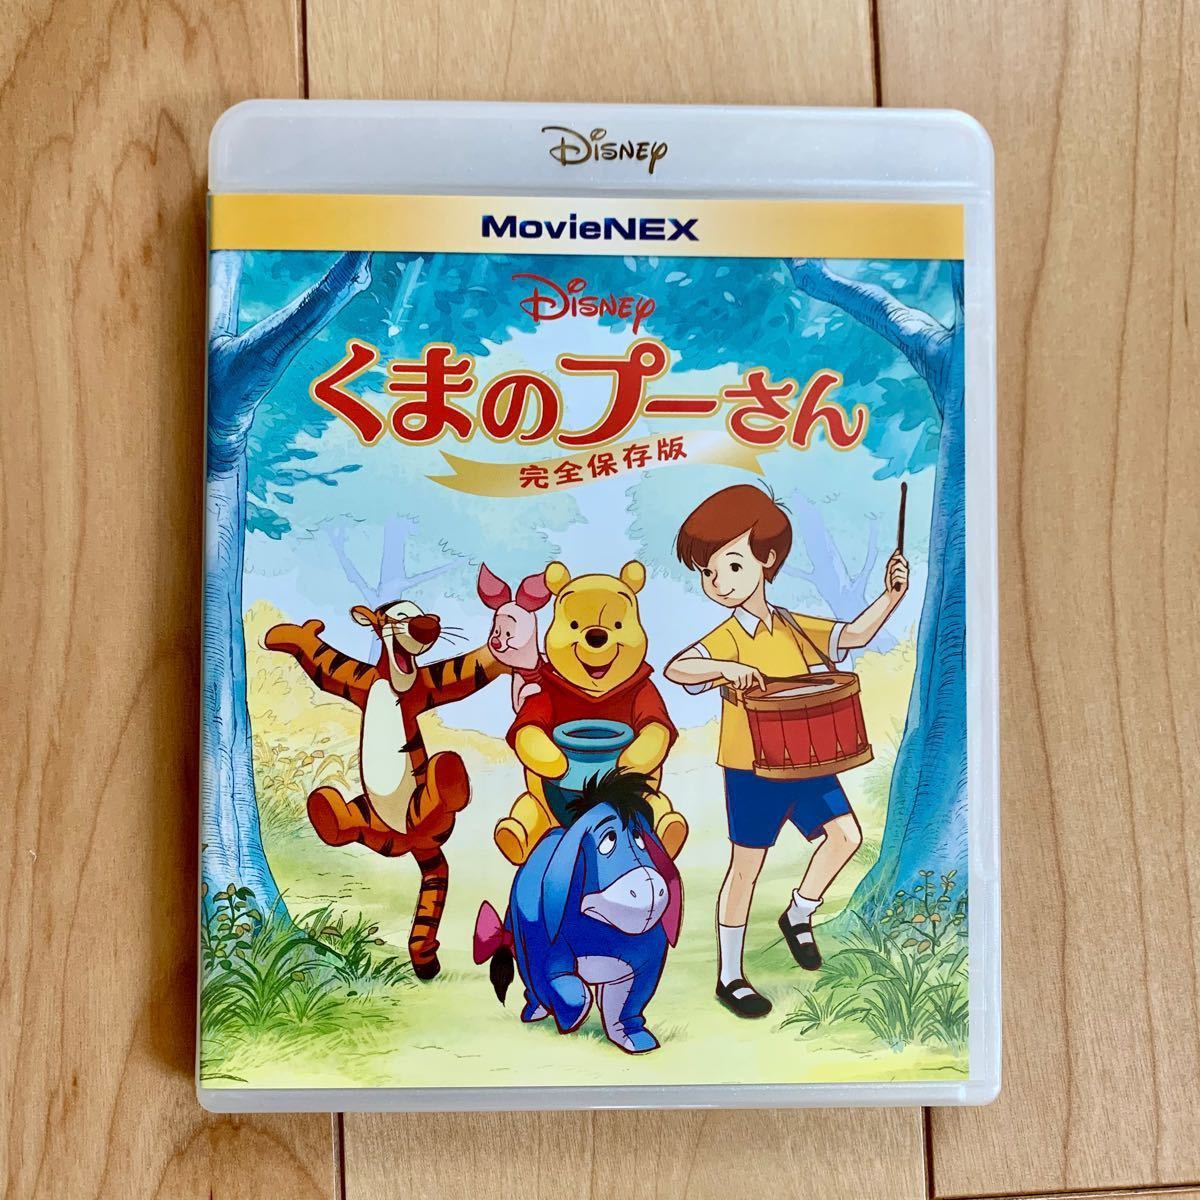 くまのプーさん 完全保存版 MovieNEX 【国内正規版】DVDディスクのみ 新品未再生 Disney ディズニー